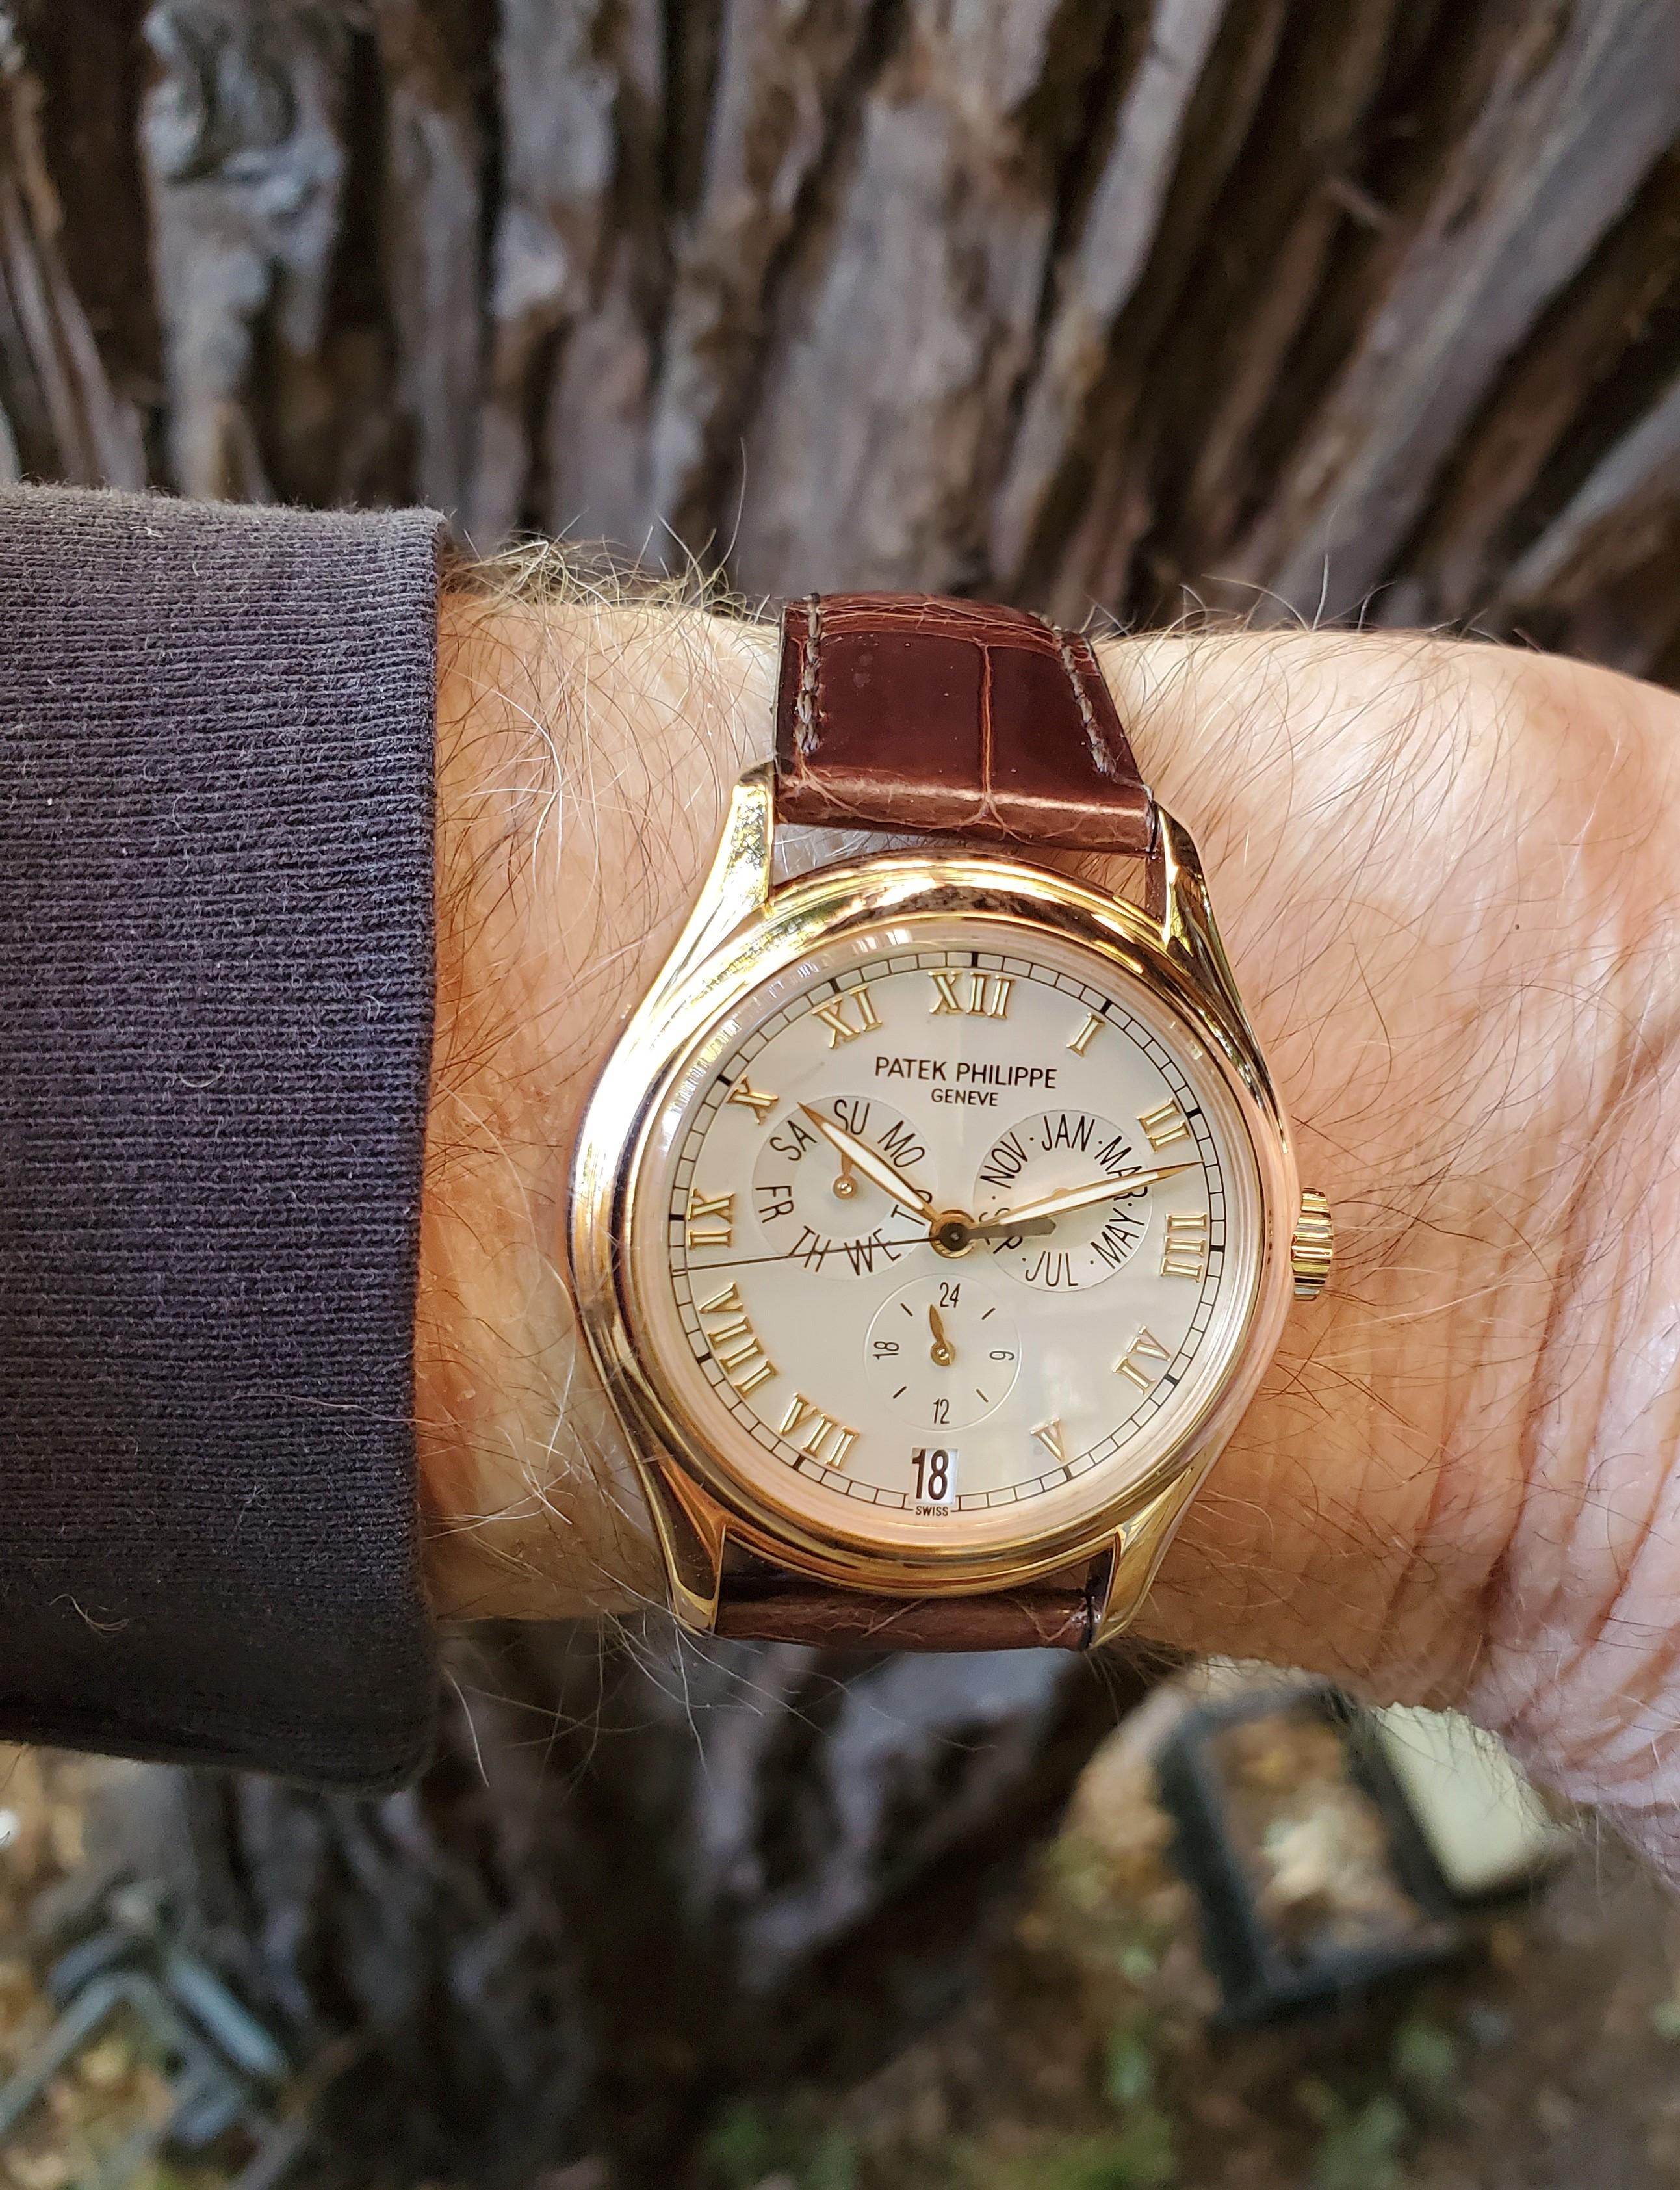 Patek Philippe 5035R Calendario Annuale Complicato.  L'orologio è realizzato in oro rosa 18 carati con indicazione delle 24 ore, giorno, data, mese, circa 2000.  Il quadrante è bianco argentato, con numeri romani in rilievo in oro rosa, lancette in